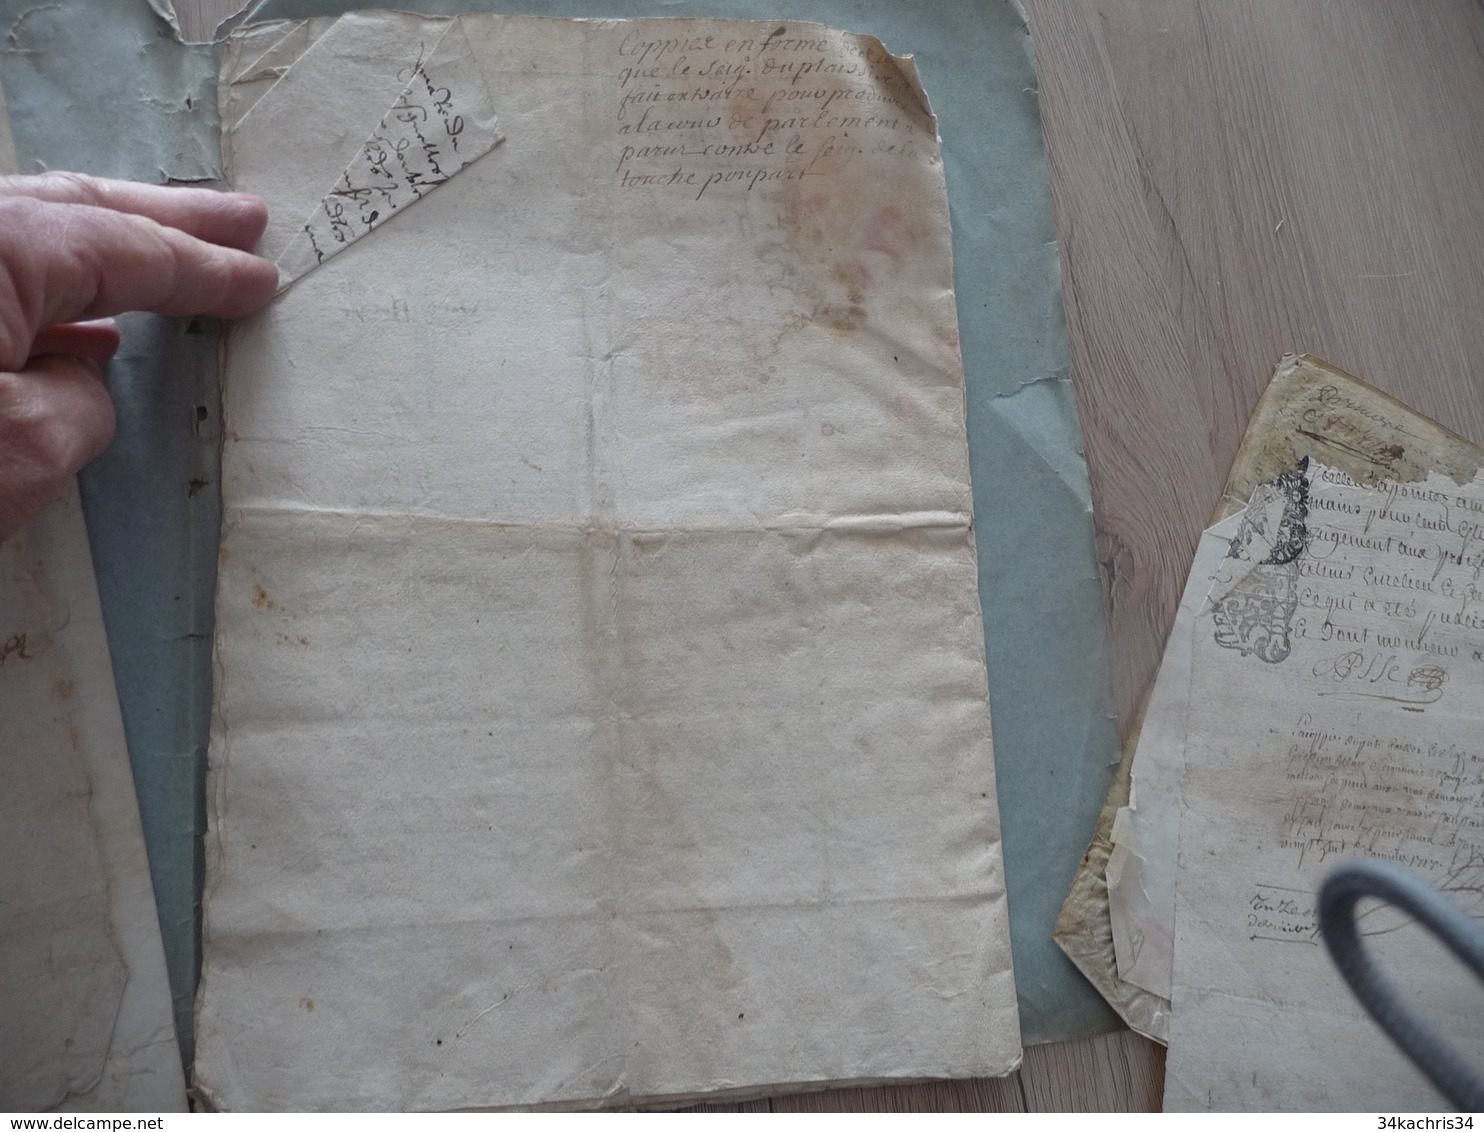 Archive Assé de L'Ausmosne 4 pièces manuscrites à étudier mouillures en l'état